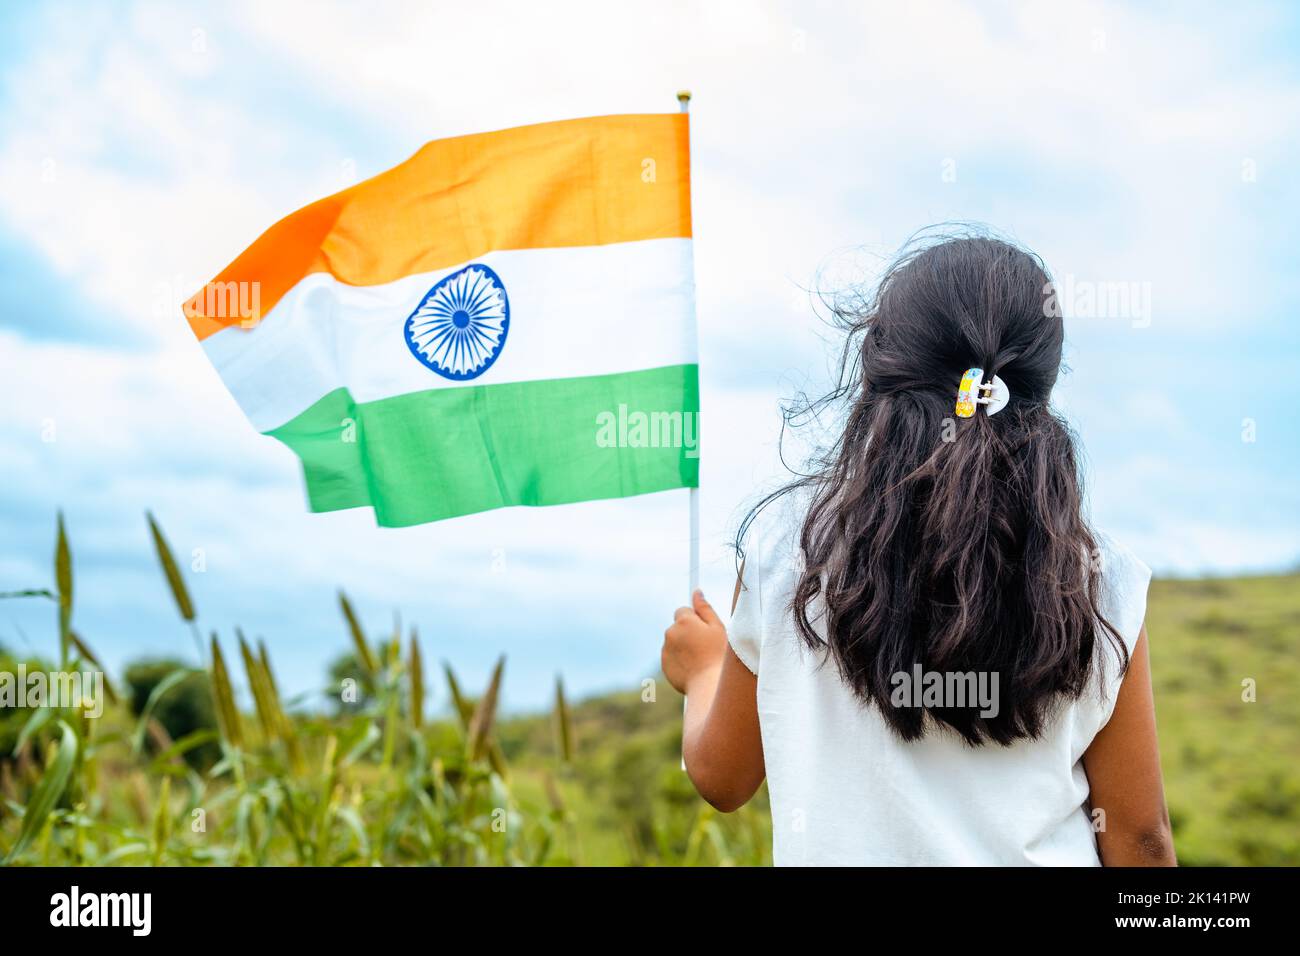 Vista trasera de una niña corriendo con una bandera india ondeando en la mano - concepto de patriotismo, celebración del día de la república y libertad Foto de stock